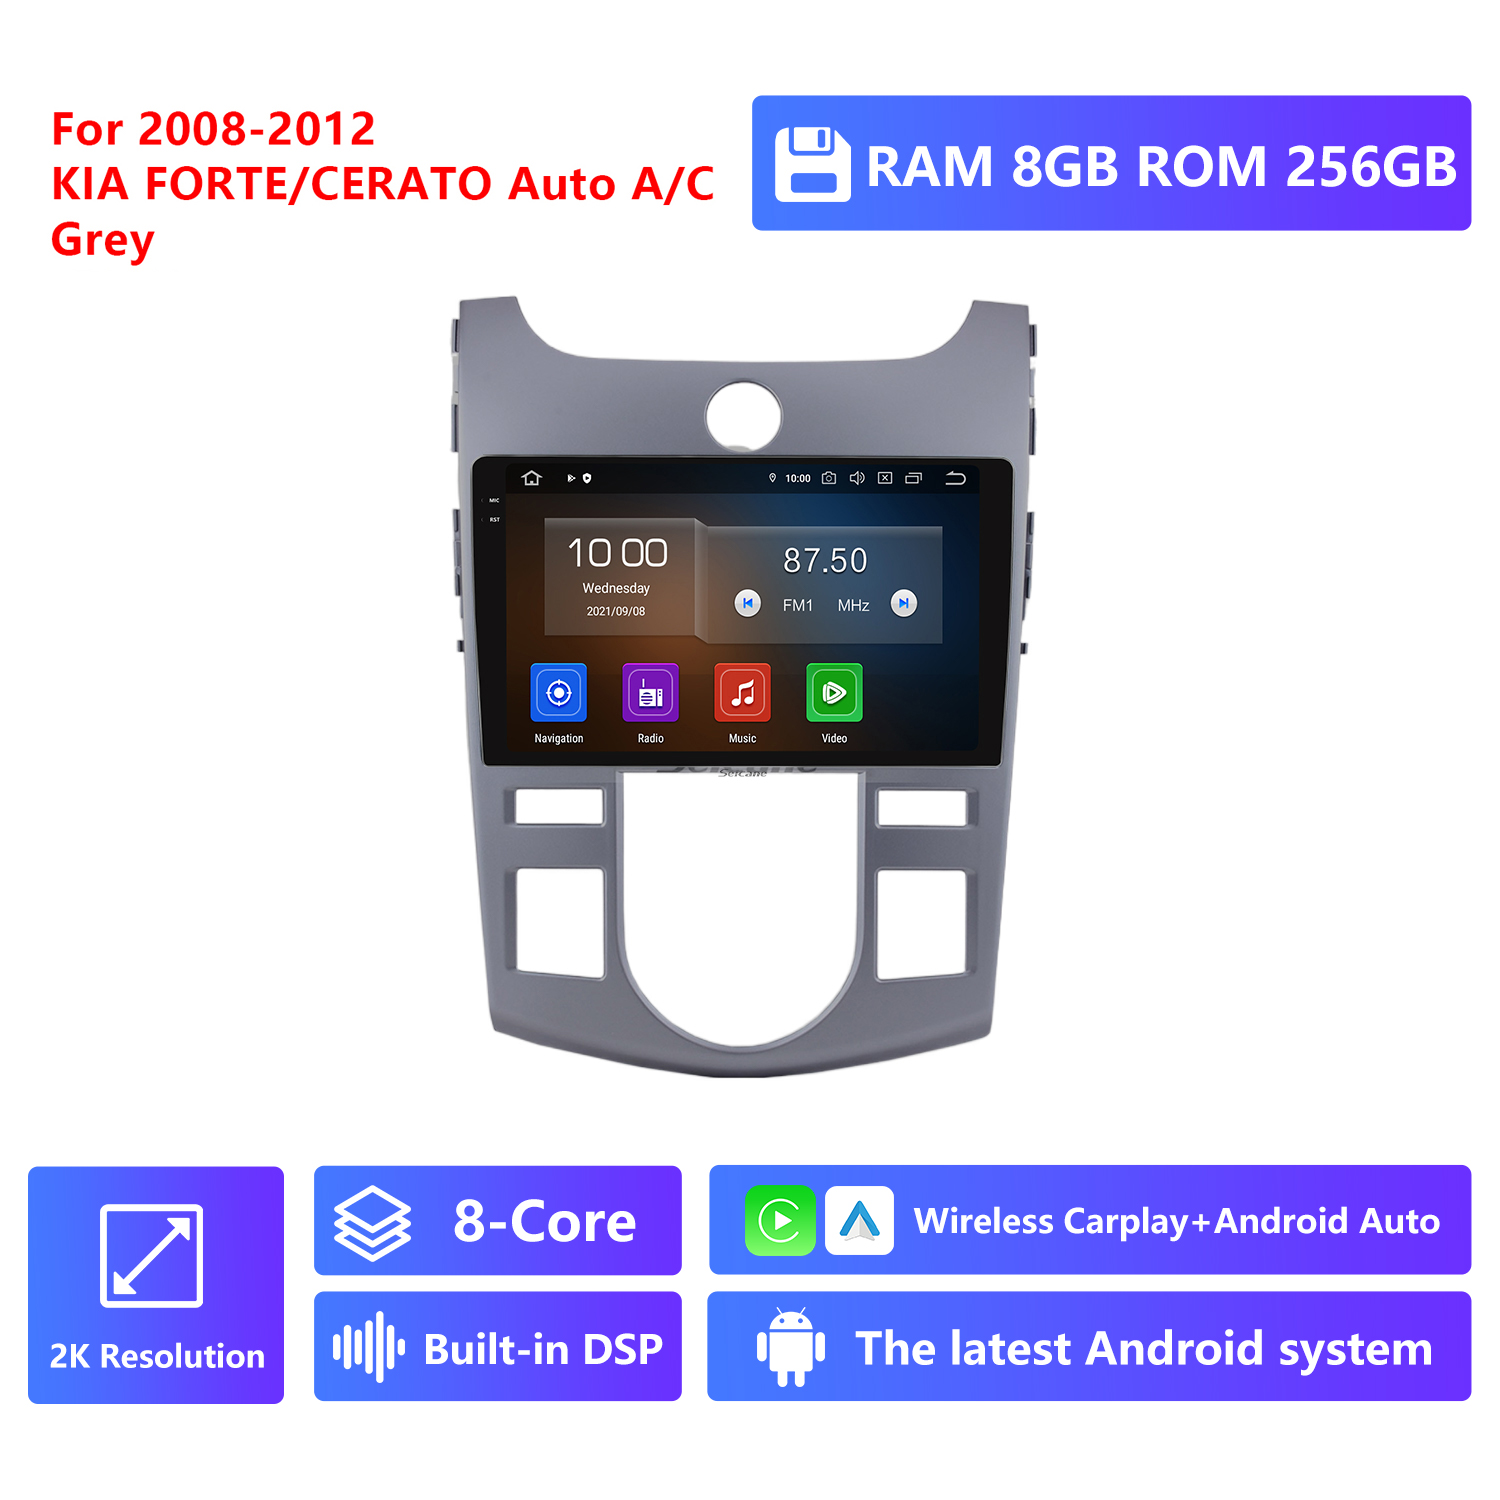 RAM 8G,ROM 256G 2K Resolution,Grey